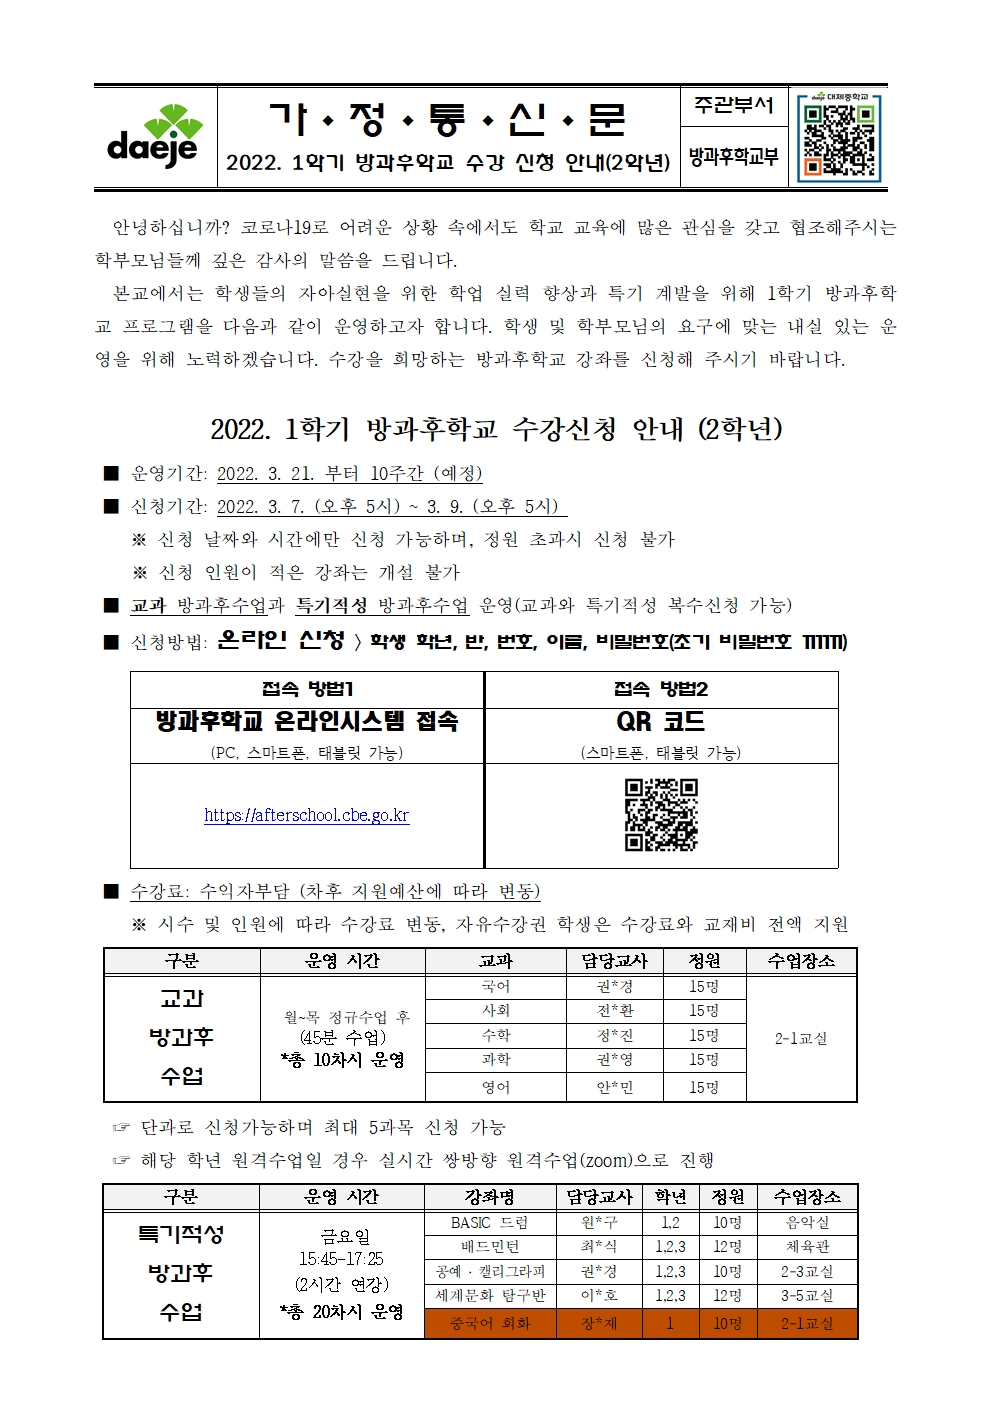 [가정통신문] 2022학년도 1학기 방과후학교 수강 신청 안내(2학년)001